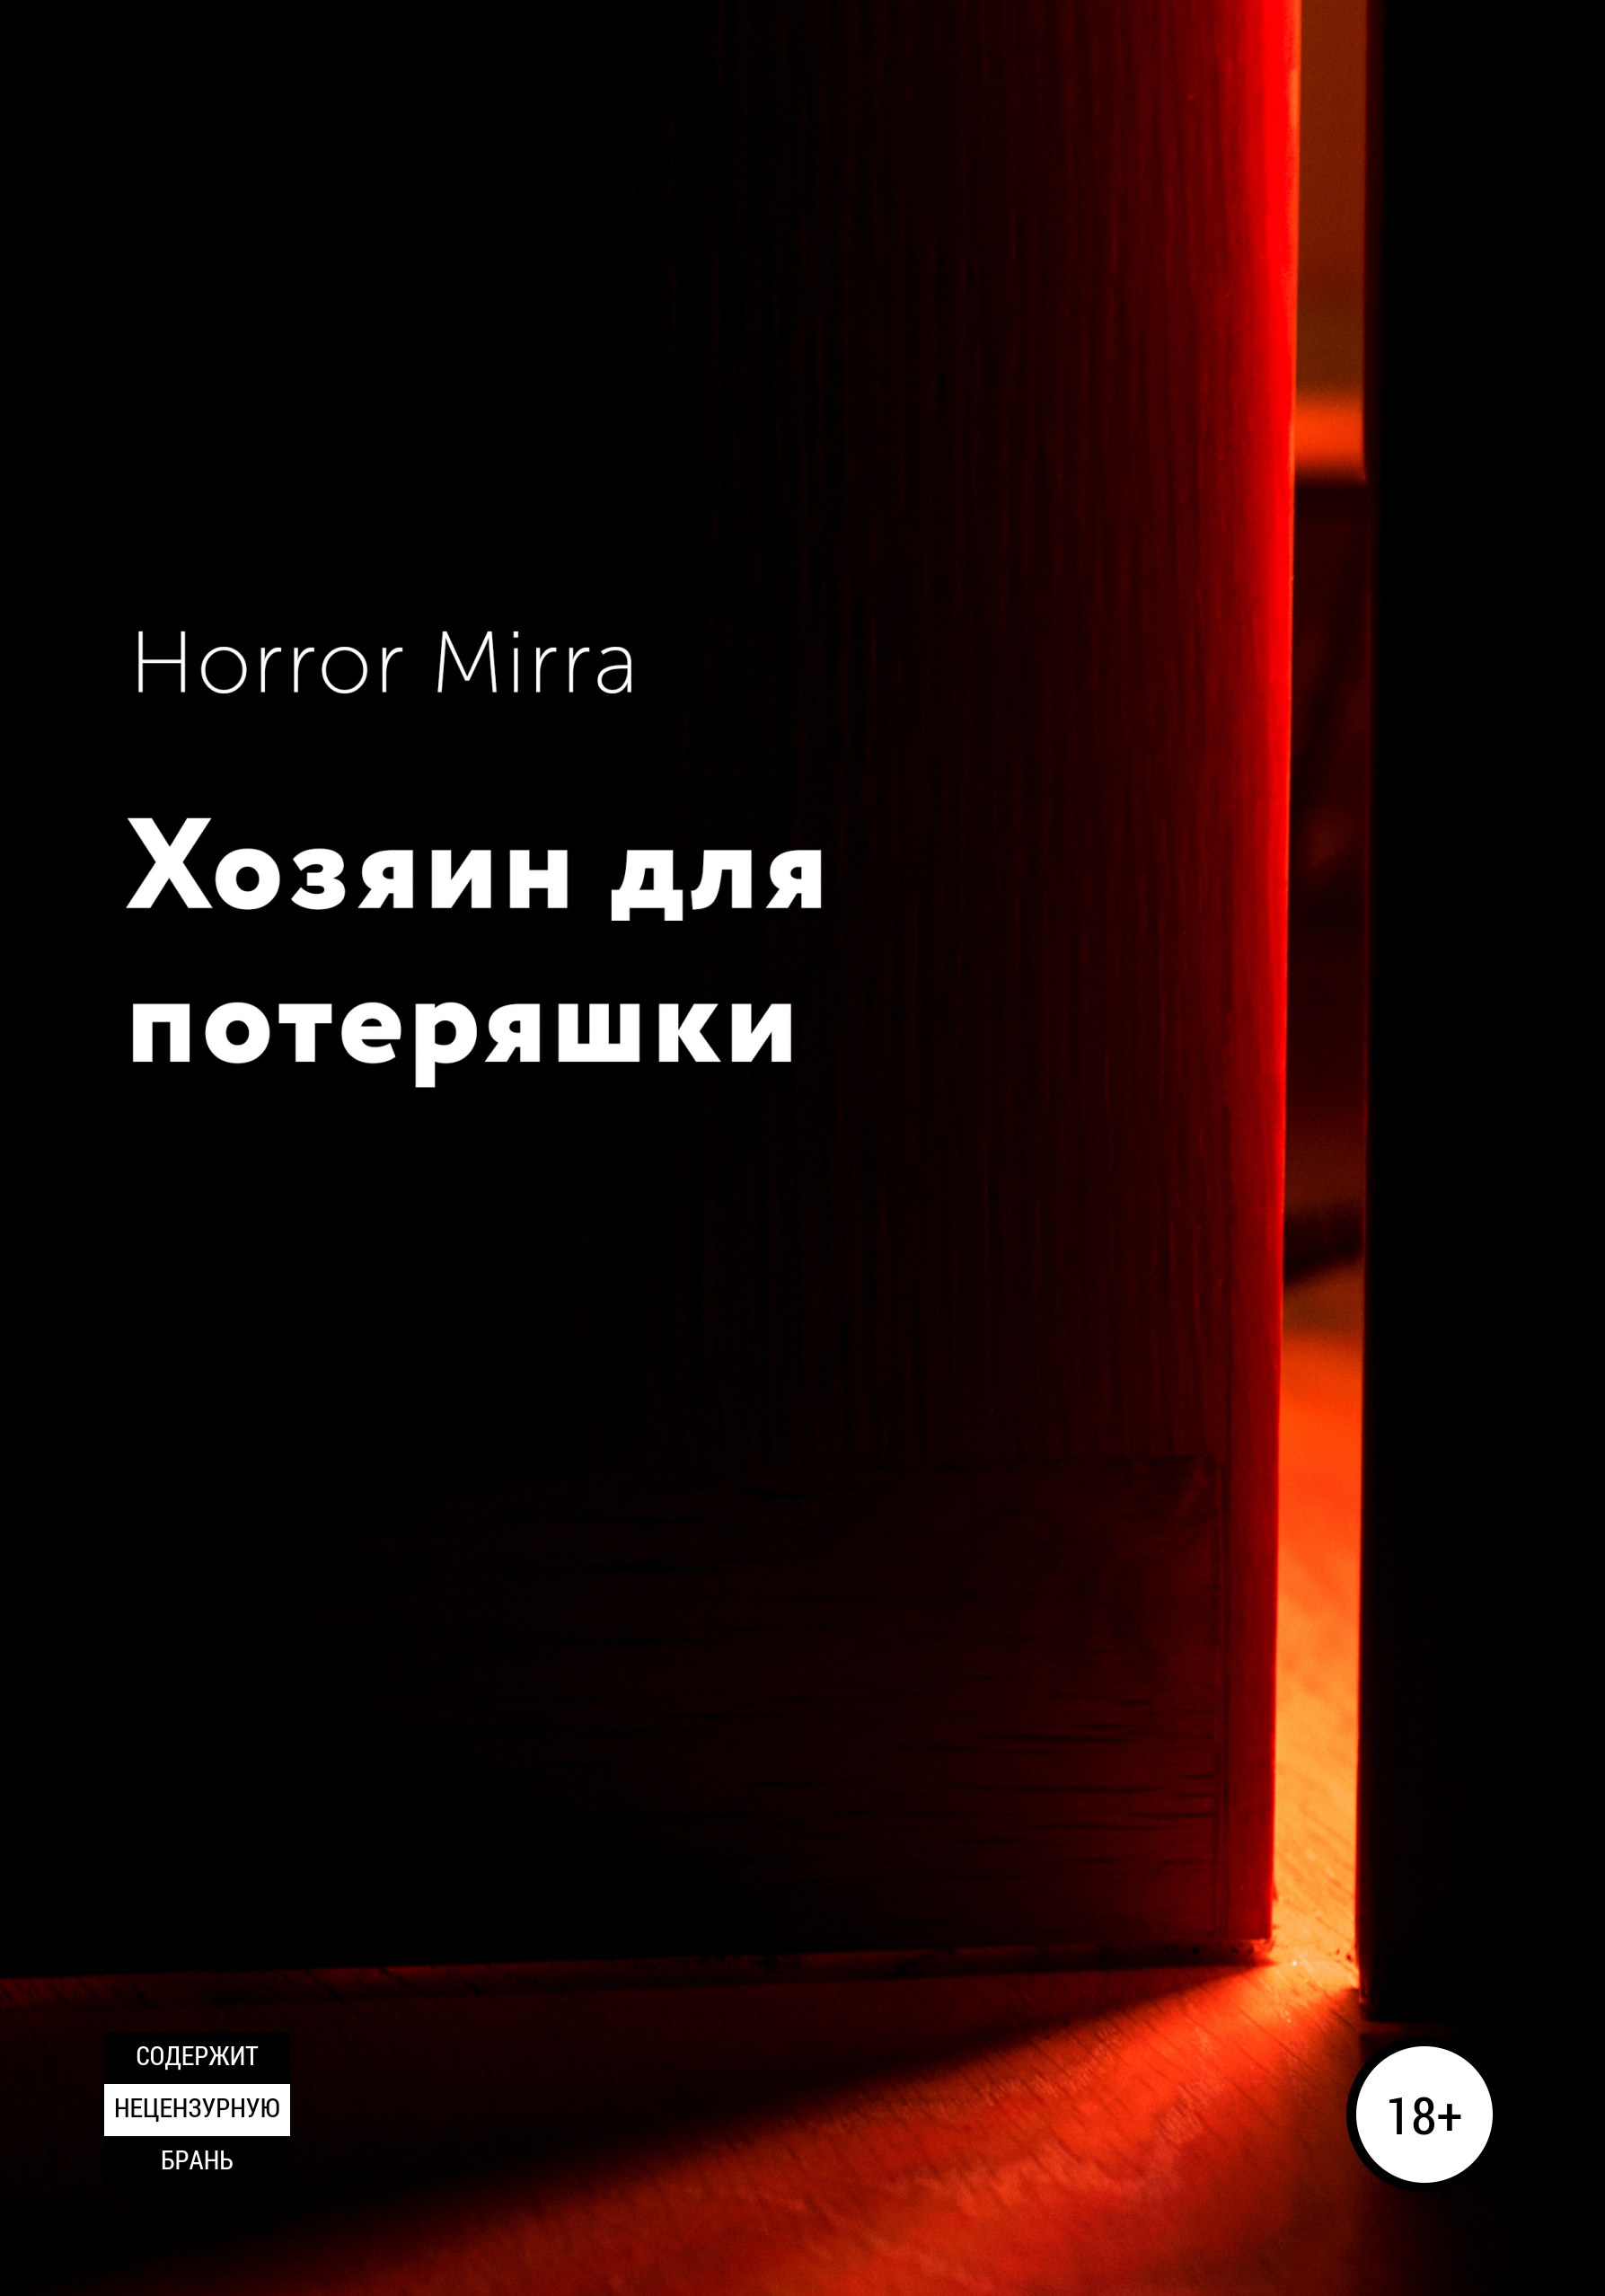 Хозяин для потеряшки – Horror Mirra